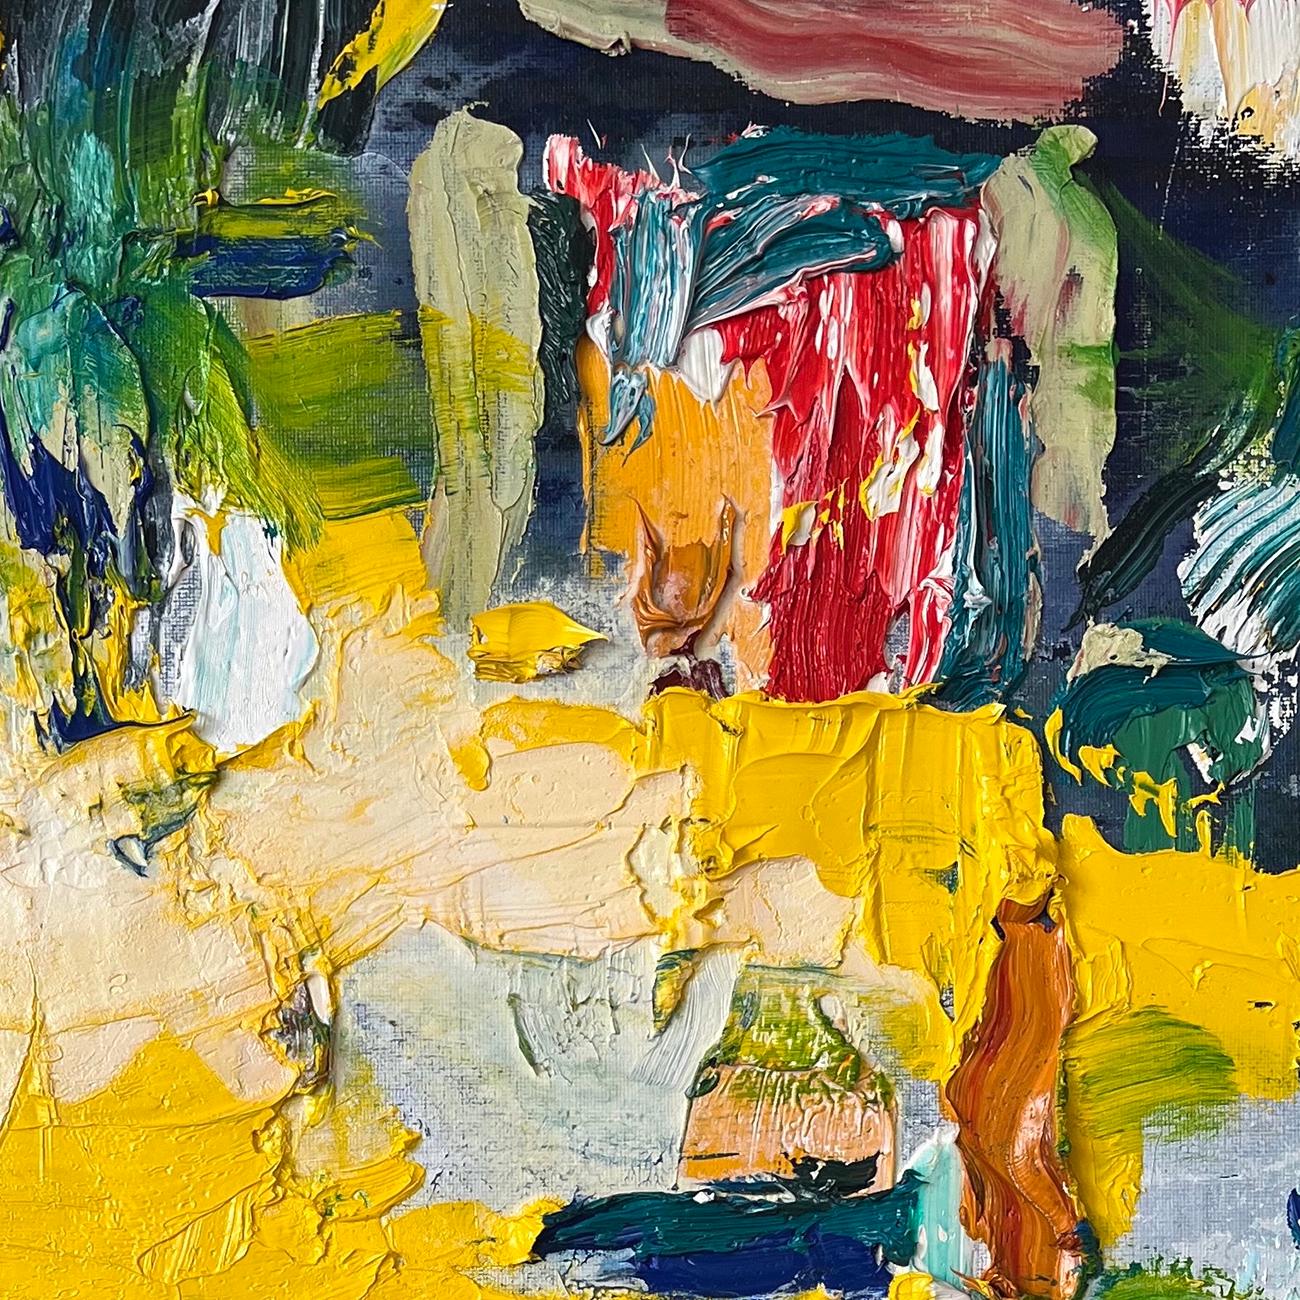 Ohne Titel 22033 (Abstraktes Gemälde)
Öl auf Leinwand - Ungerahmt.

Martín Reyna ist ein argentinischstämmiger abstrakter Maler, der in Paris, Frankreich, lebt. Seine gestischen abstrakten Gemälde erfreuen das Auge und aktivieren den Geist mit ihren